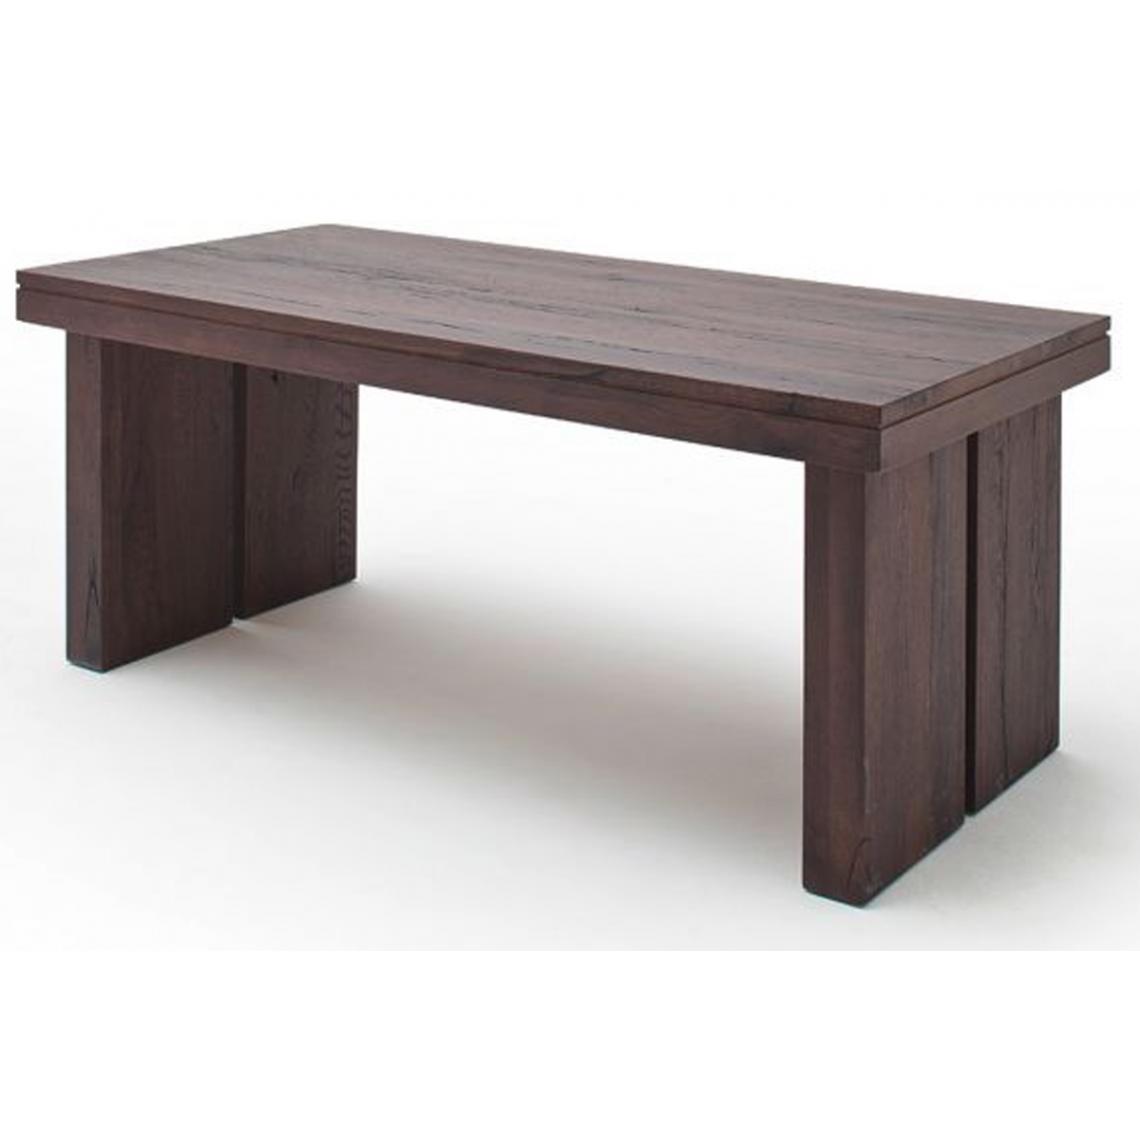 Pegane - Table à manger rectangulaire en chêne massif patiné laqué mat - L.180 x H.76 x P.90 cm - Tables à manger